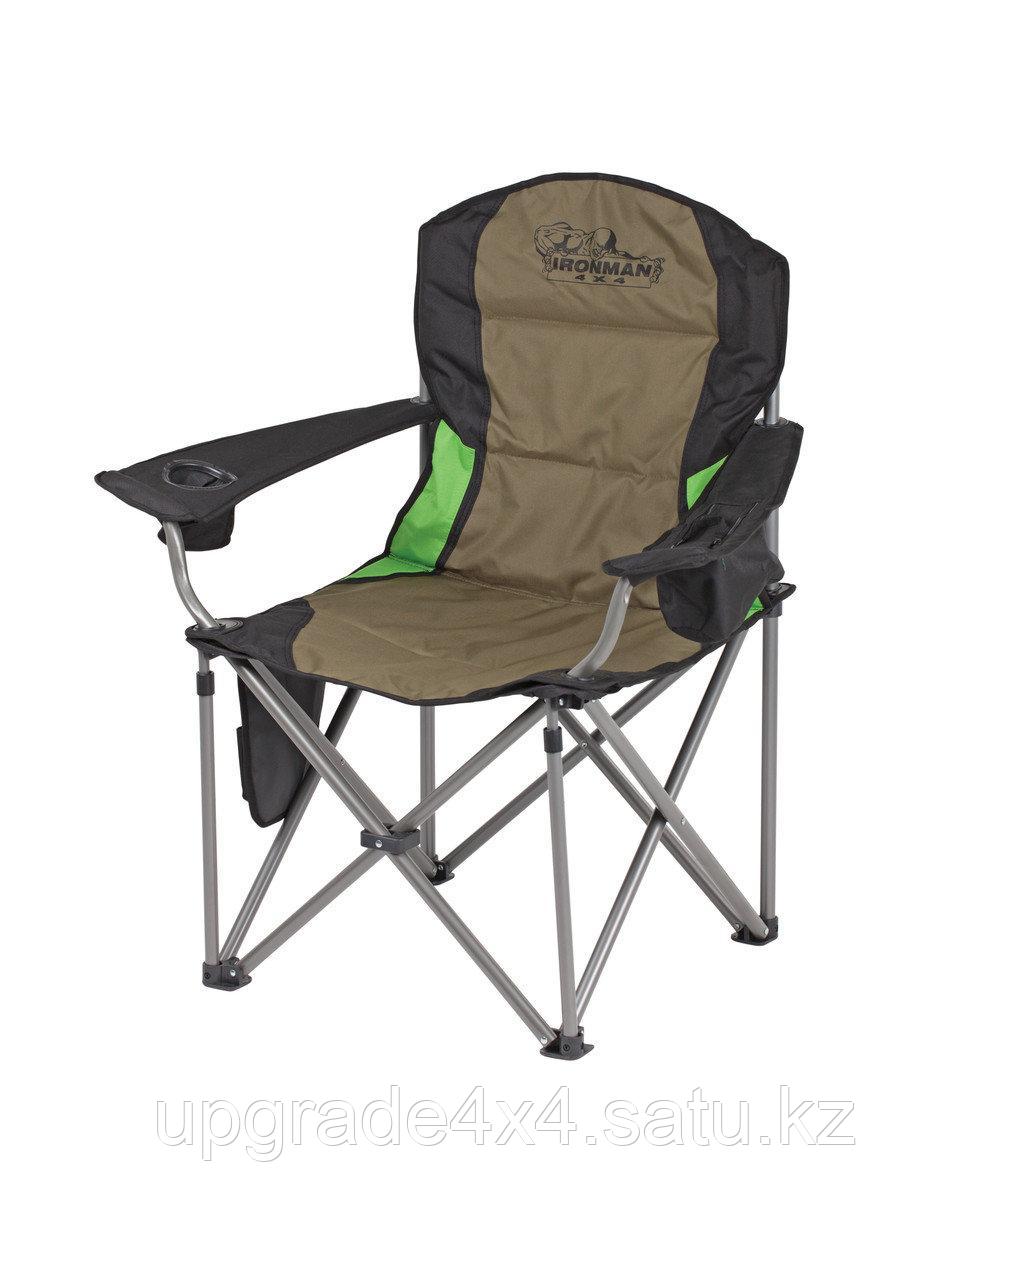 Складное туристическое кресло - IRONMAN 4X4 с мягкими подлокотниками